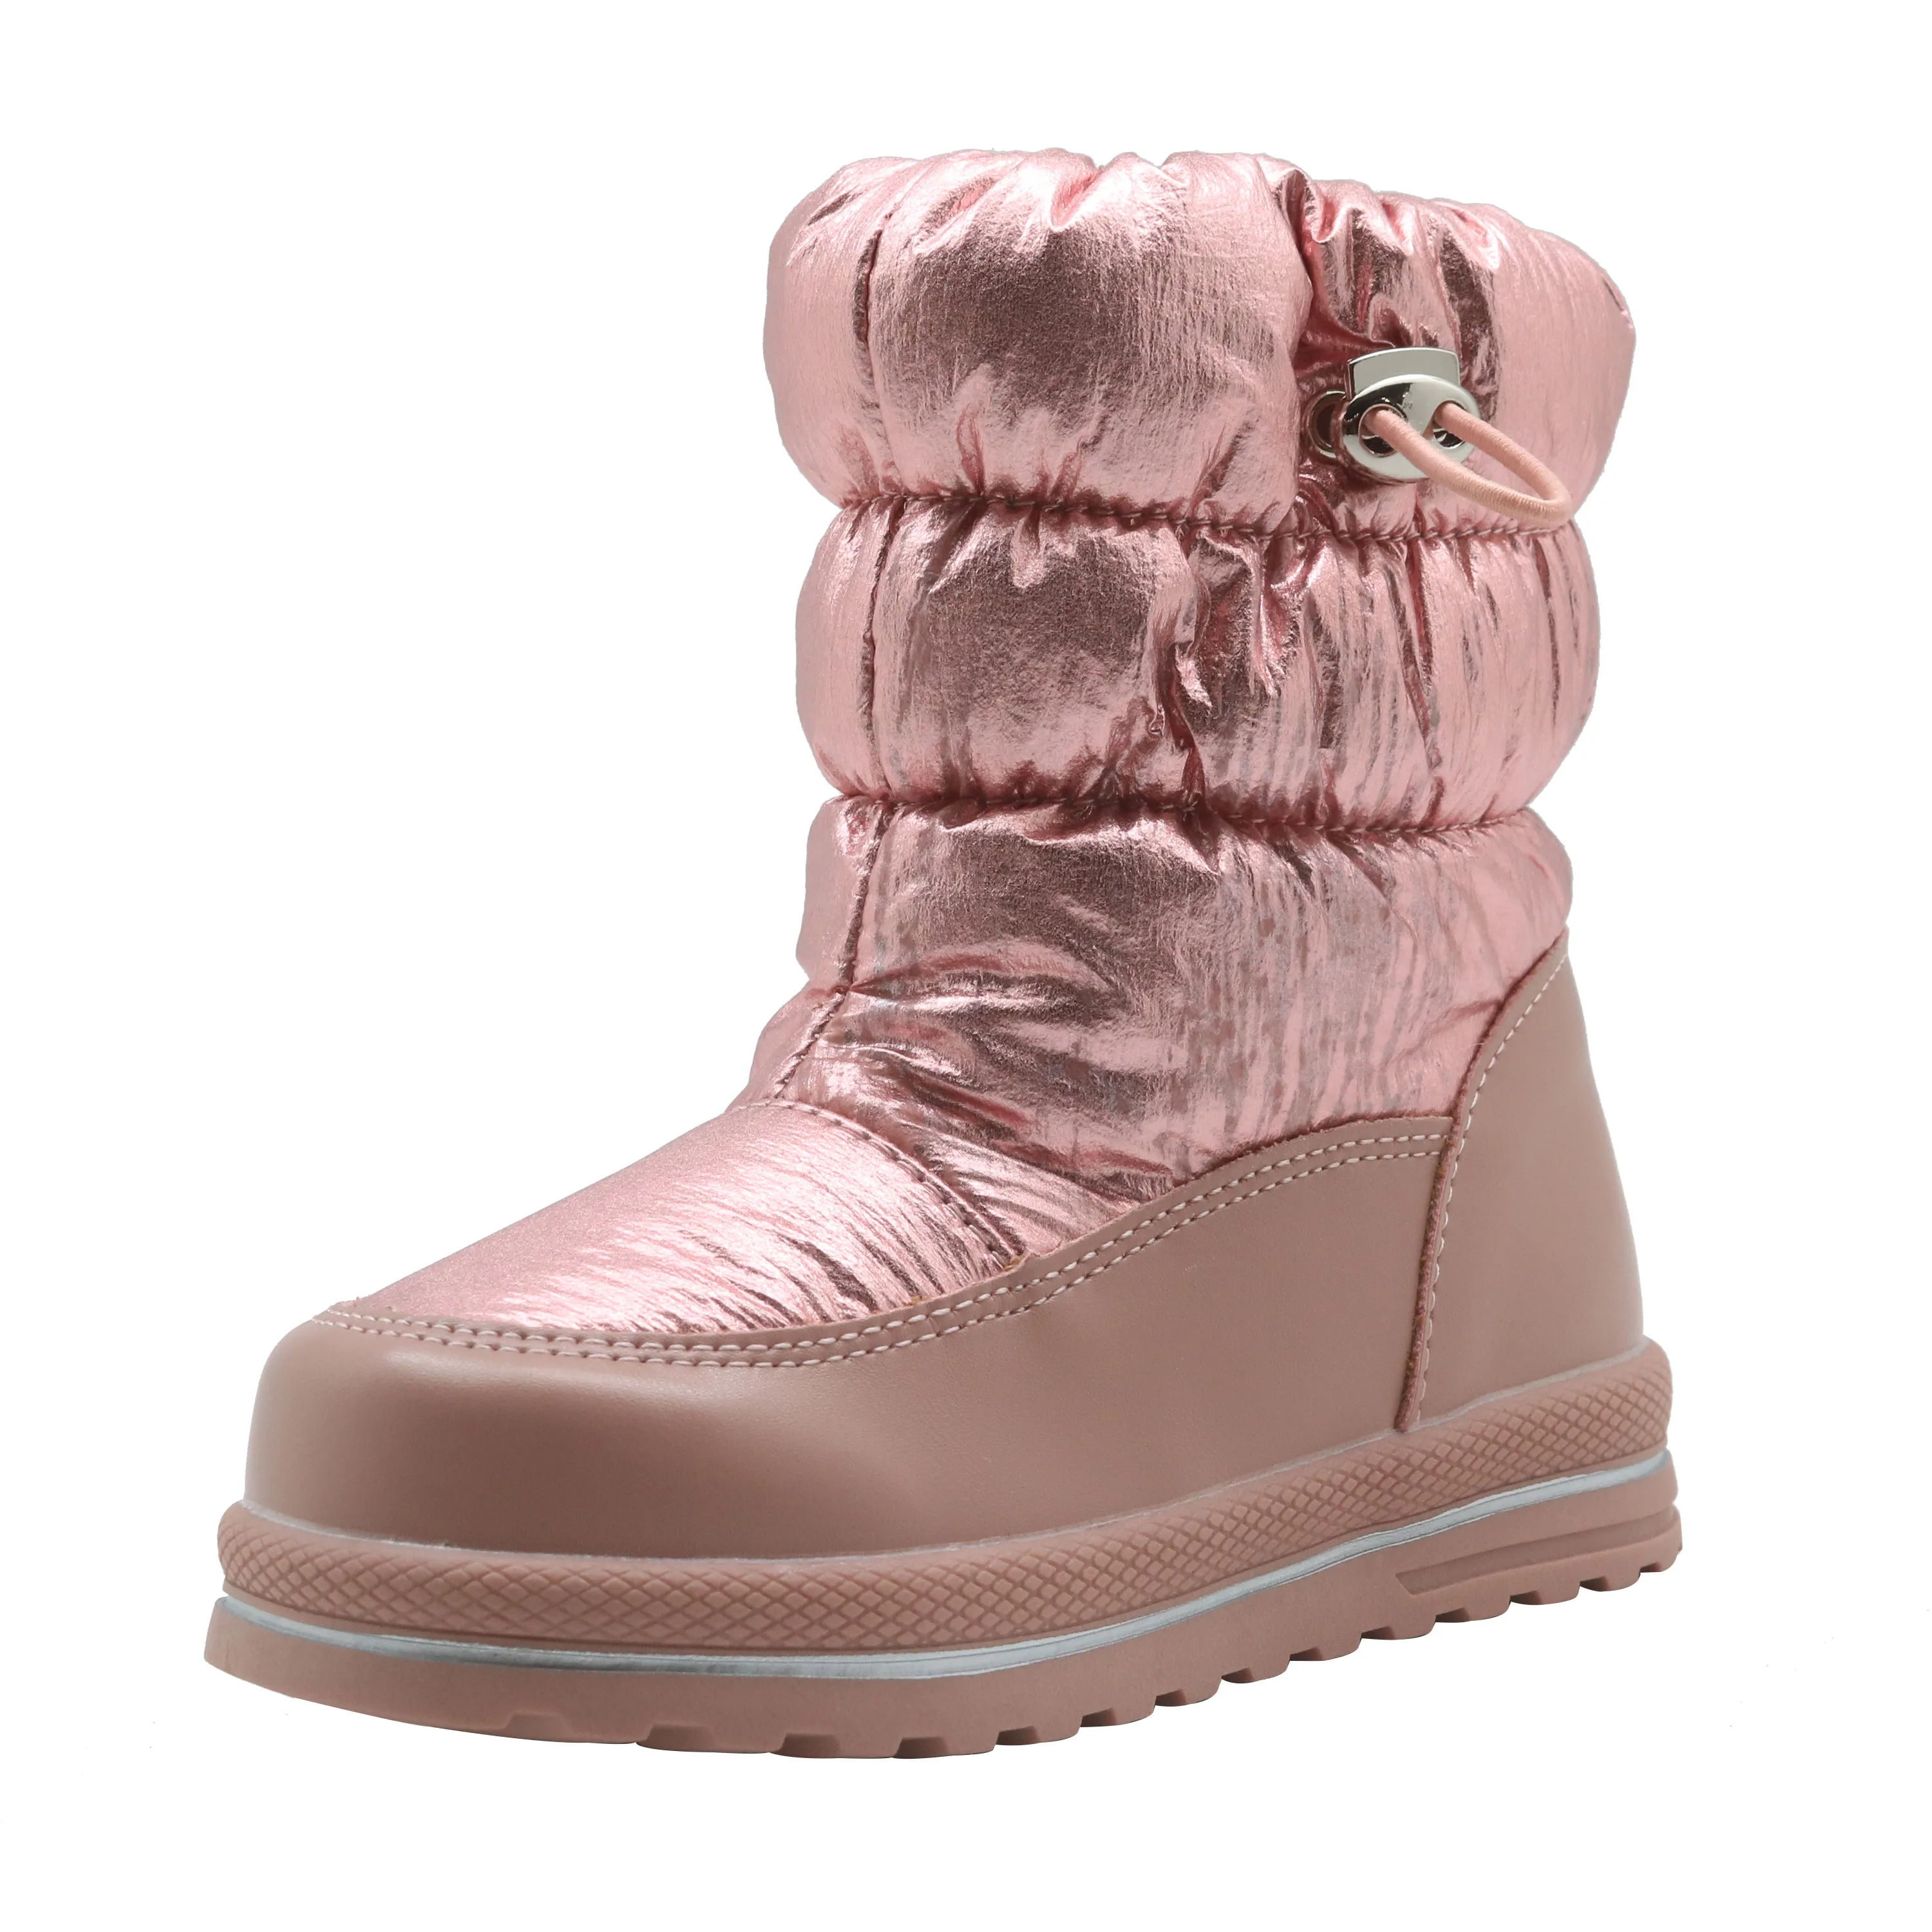 Ahannie/зимние ботинки для малышей/маленьких детей; легкие водонепроницаемые уличные теплые ботинки на искусственном меху; зимняя обувь - Цвет: Pink